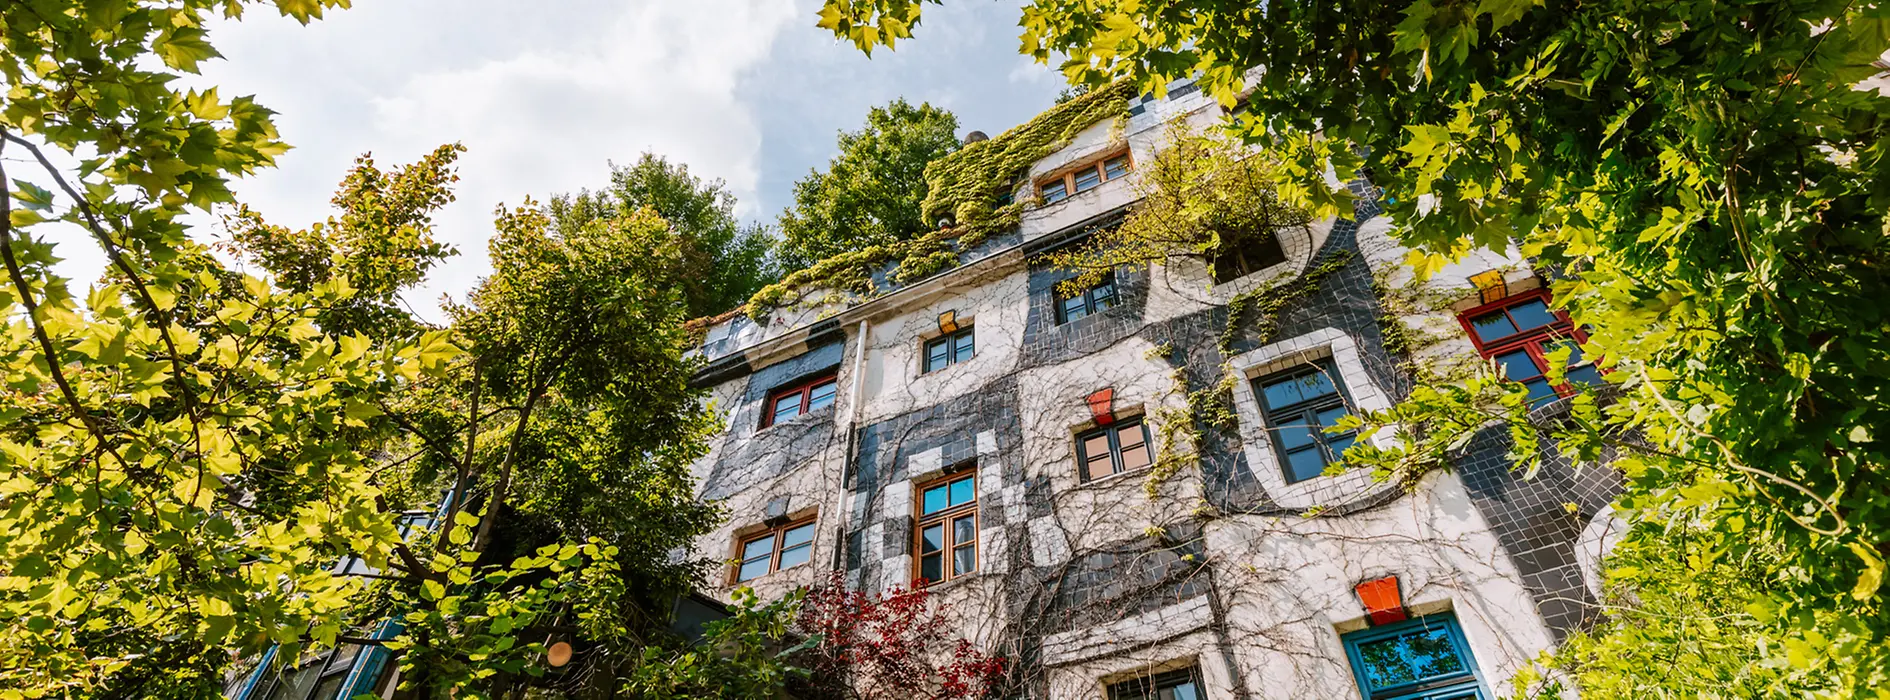 Zelená fasáda muzea podle návrhu architekta Hundertwassera